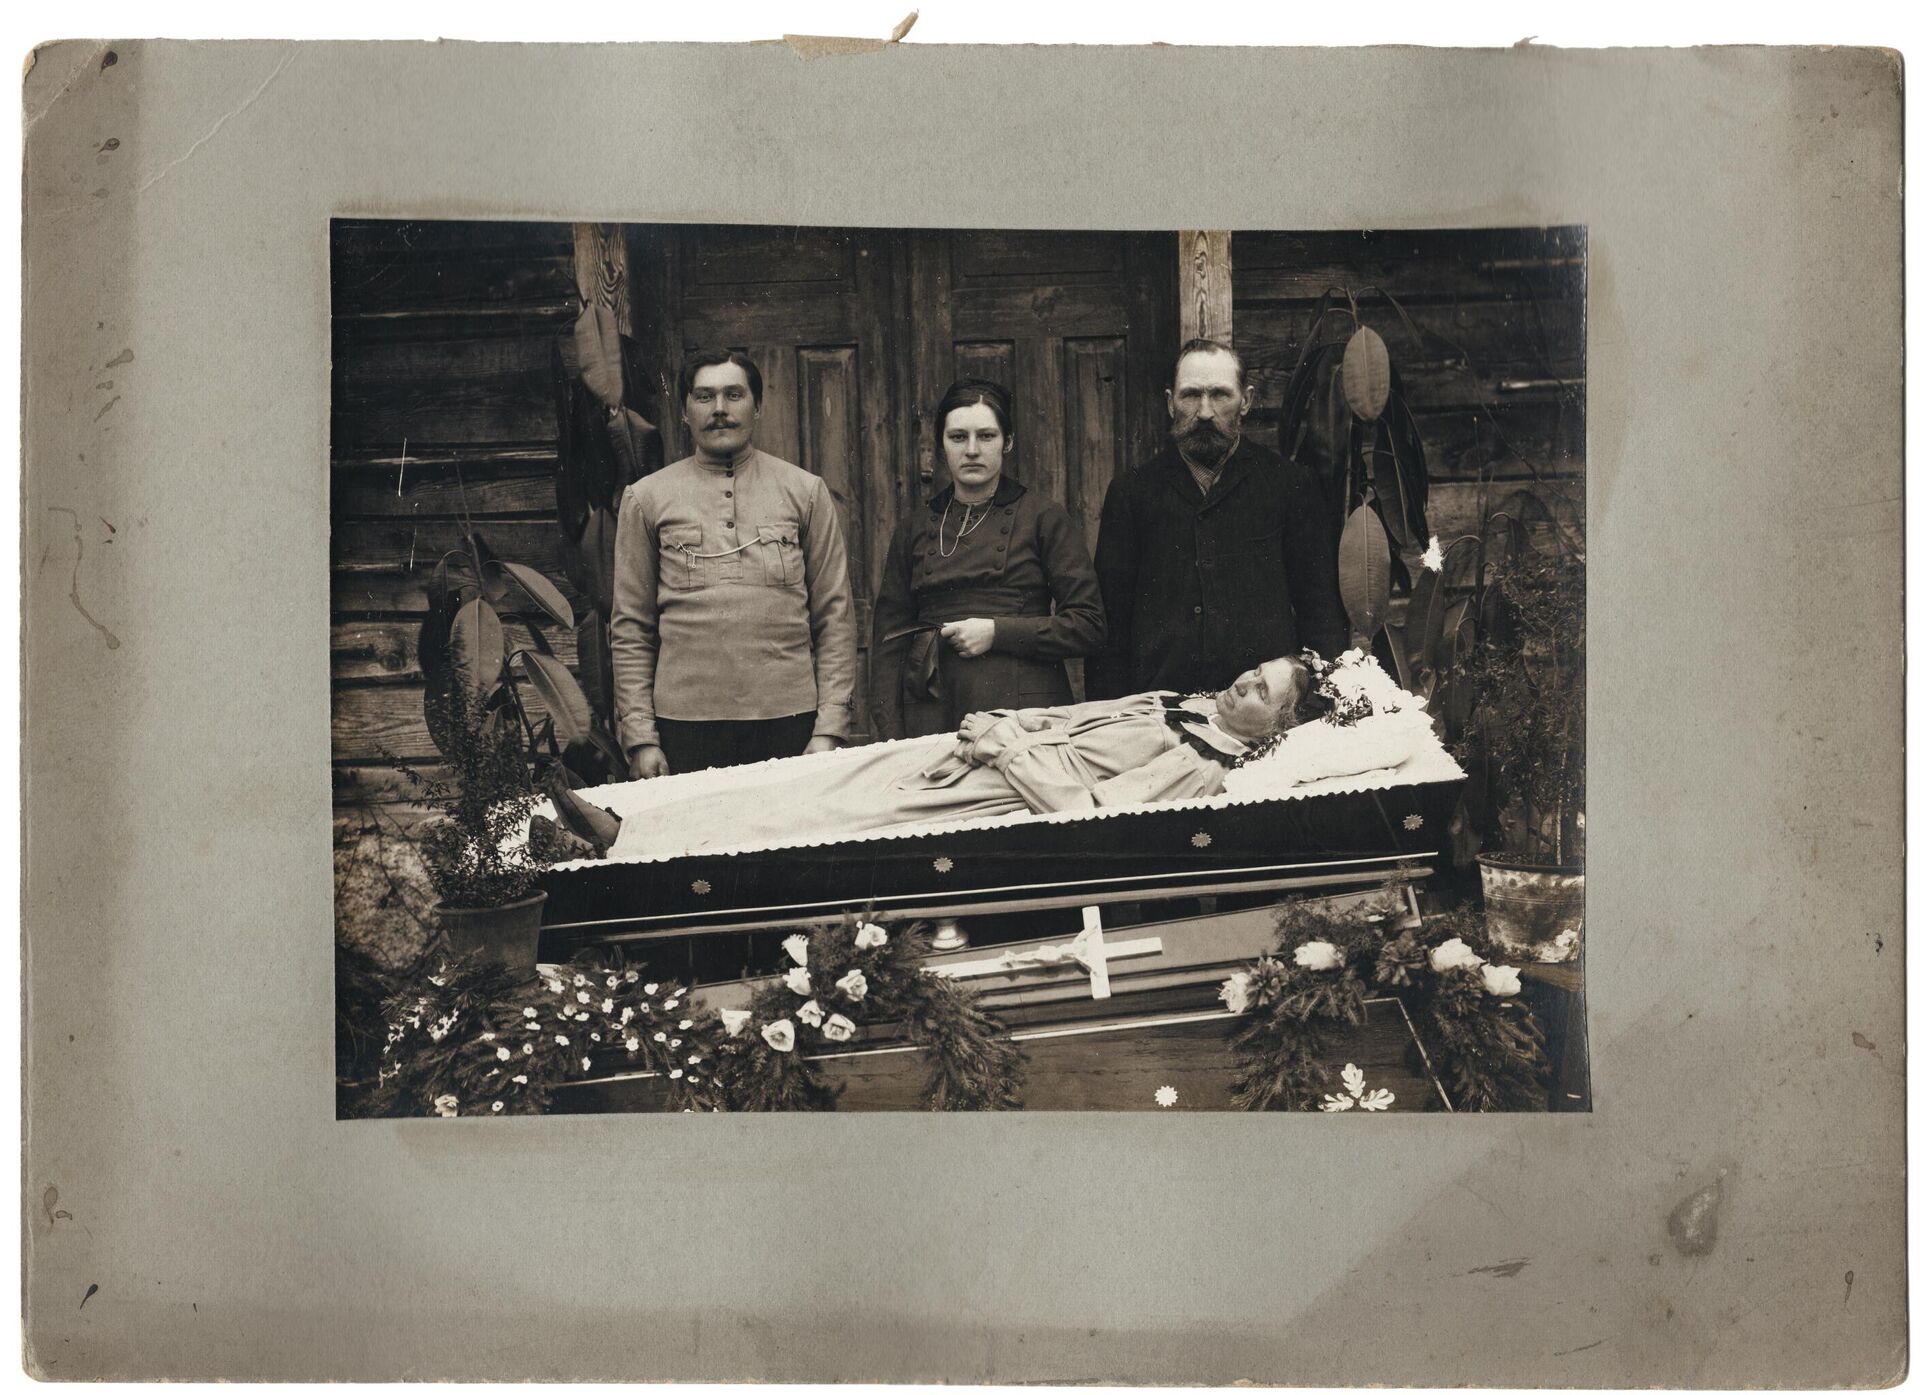 Familia velando el cuerpo sin vida de un ser querido - Sputnik Mundo, 1920, 02.06.2021